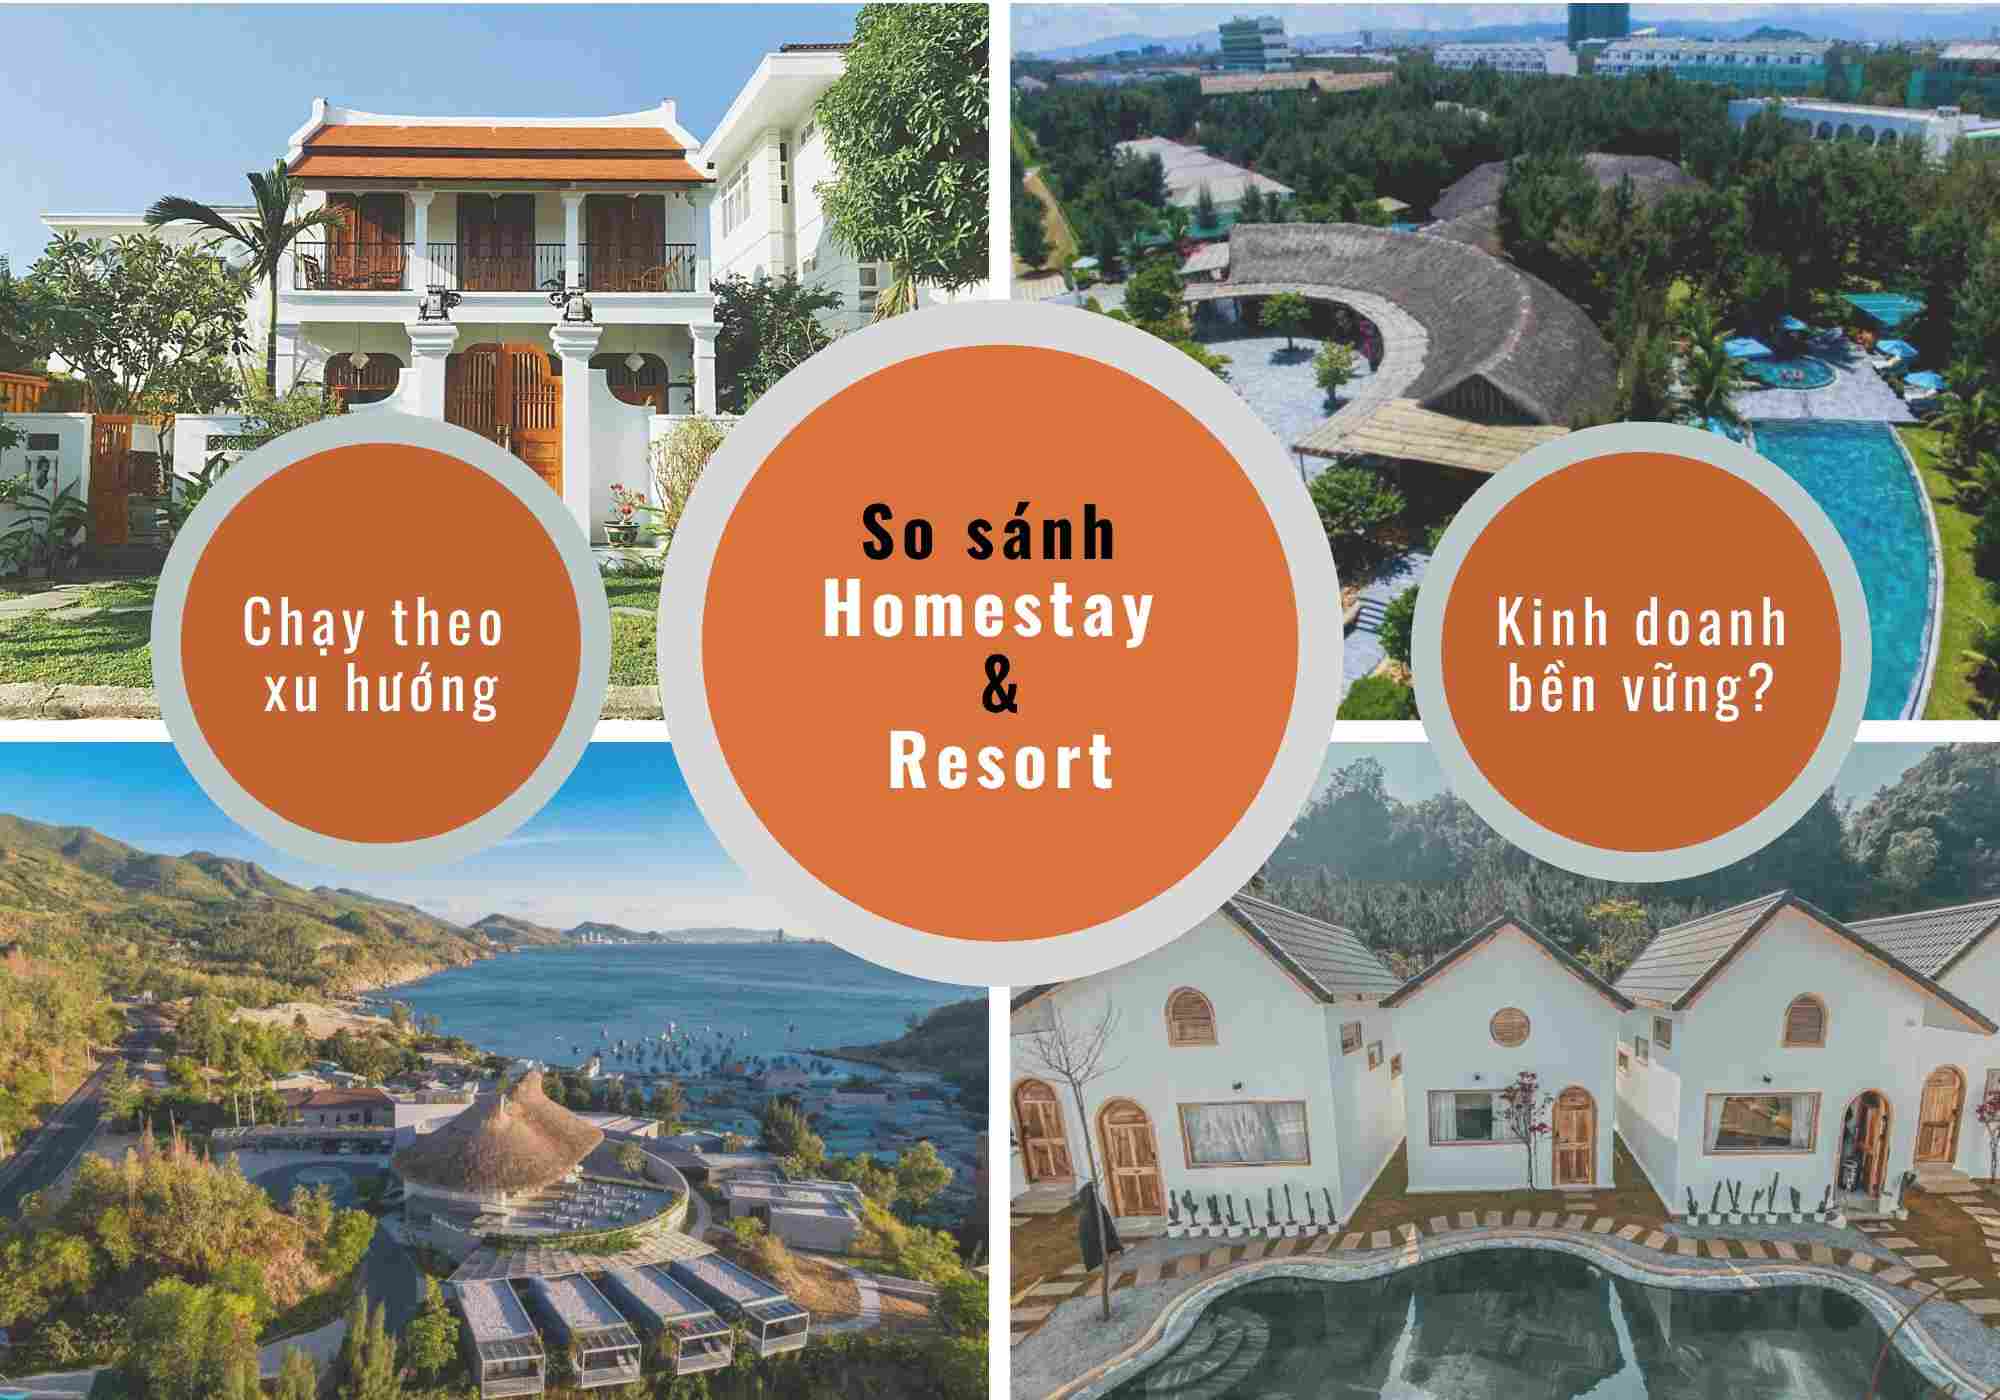 So sánh homestay với resort - chạy theo “xu hướng” hay kinh doanh bền vững?